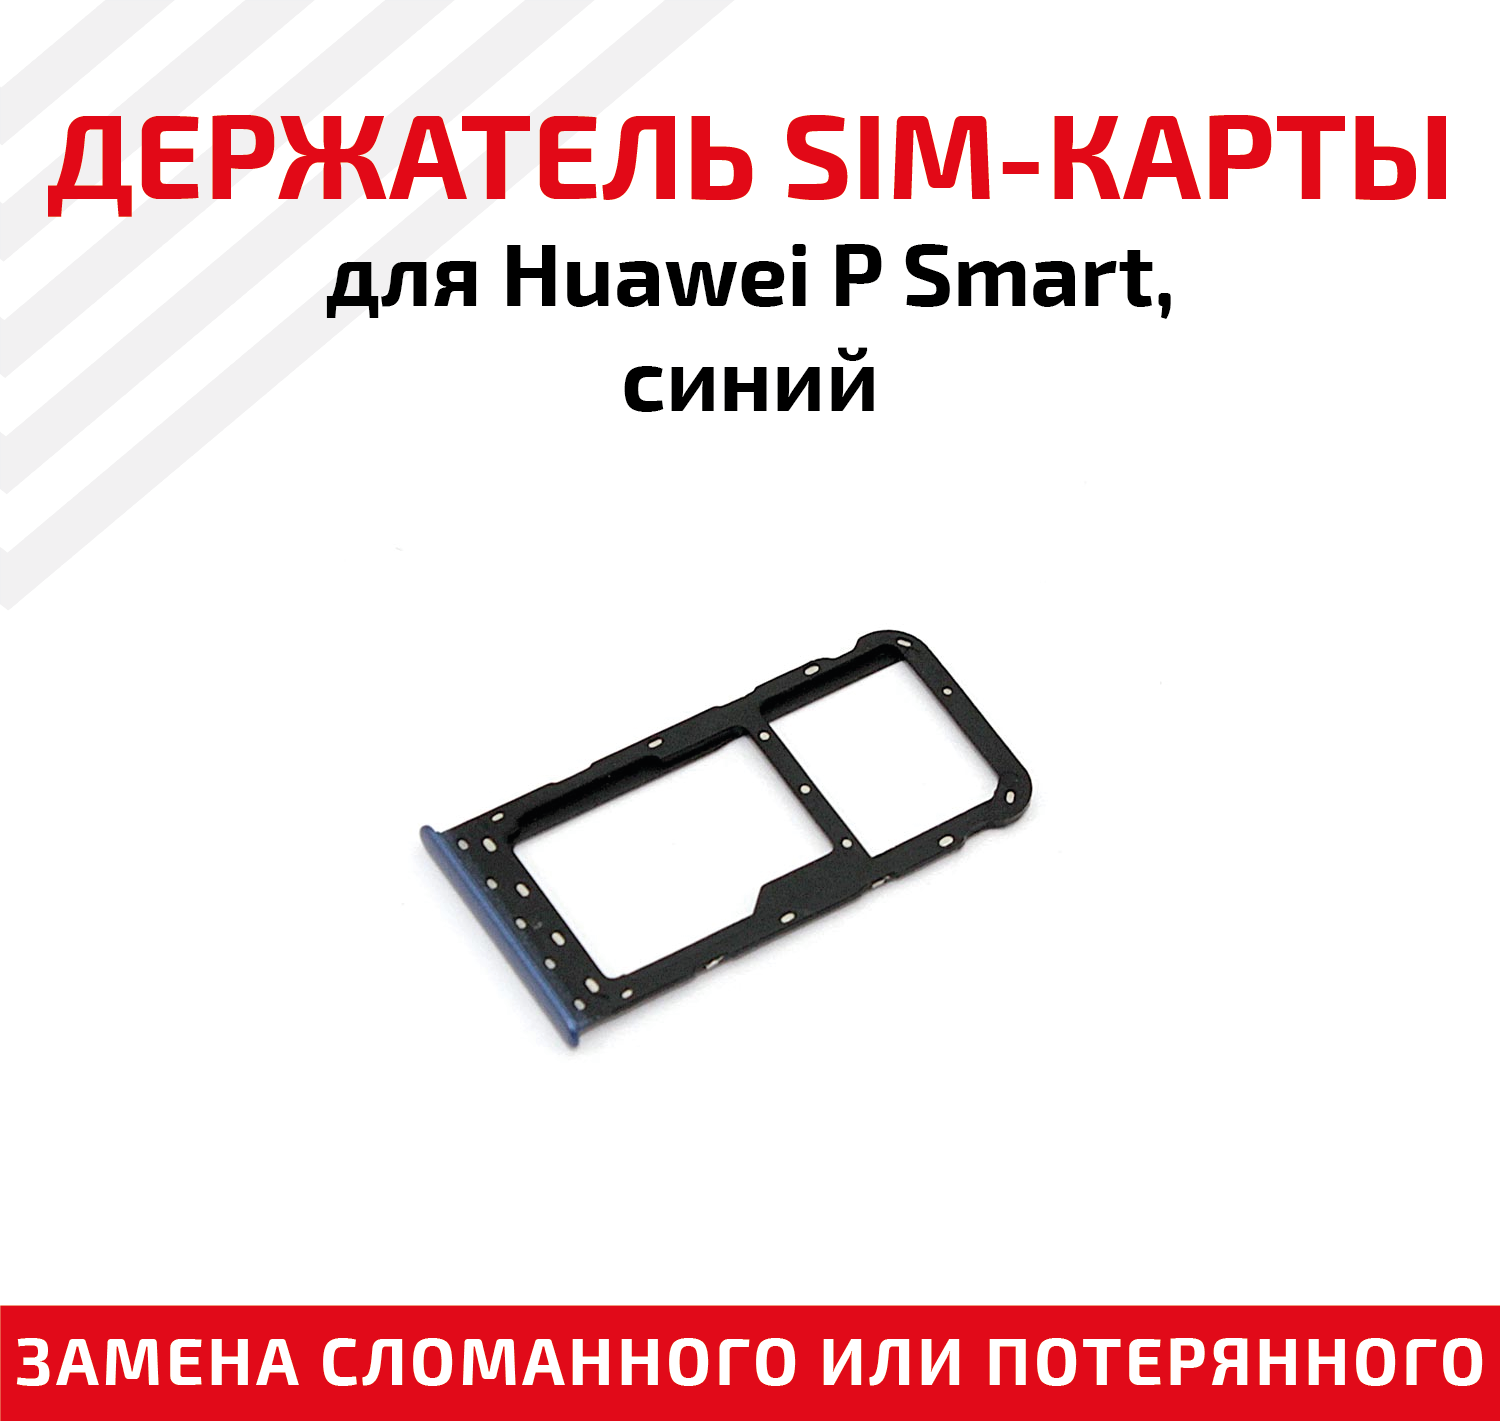 Лоток (держатель контейнер слот) SIM-карты для мобильного телефона (смартфона) Huawei P Smart синий